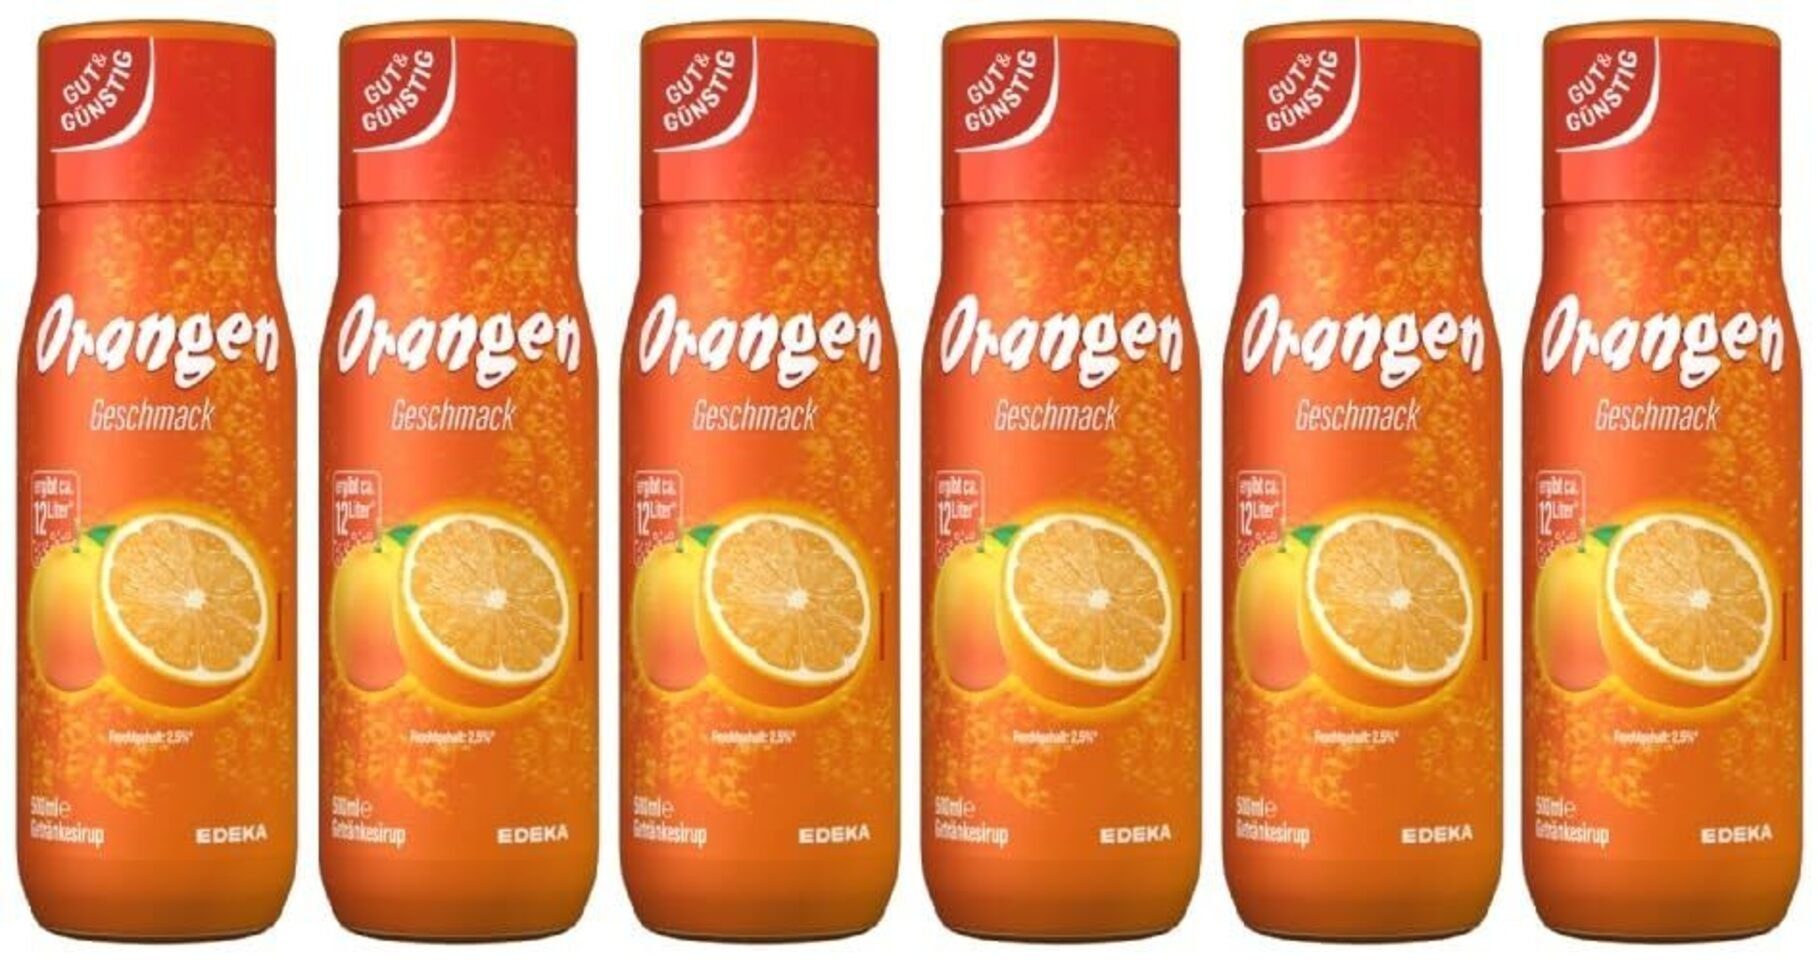 Gut & Günstig (6x500ml) Getränkesirup 6er Pack Trinkflasche Orange 00402251